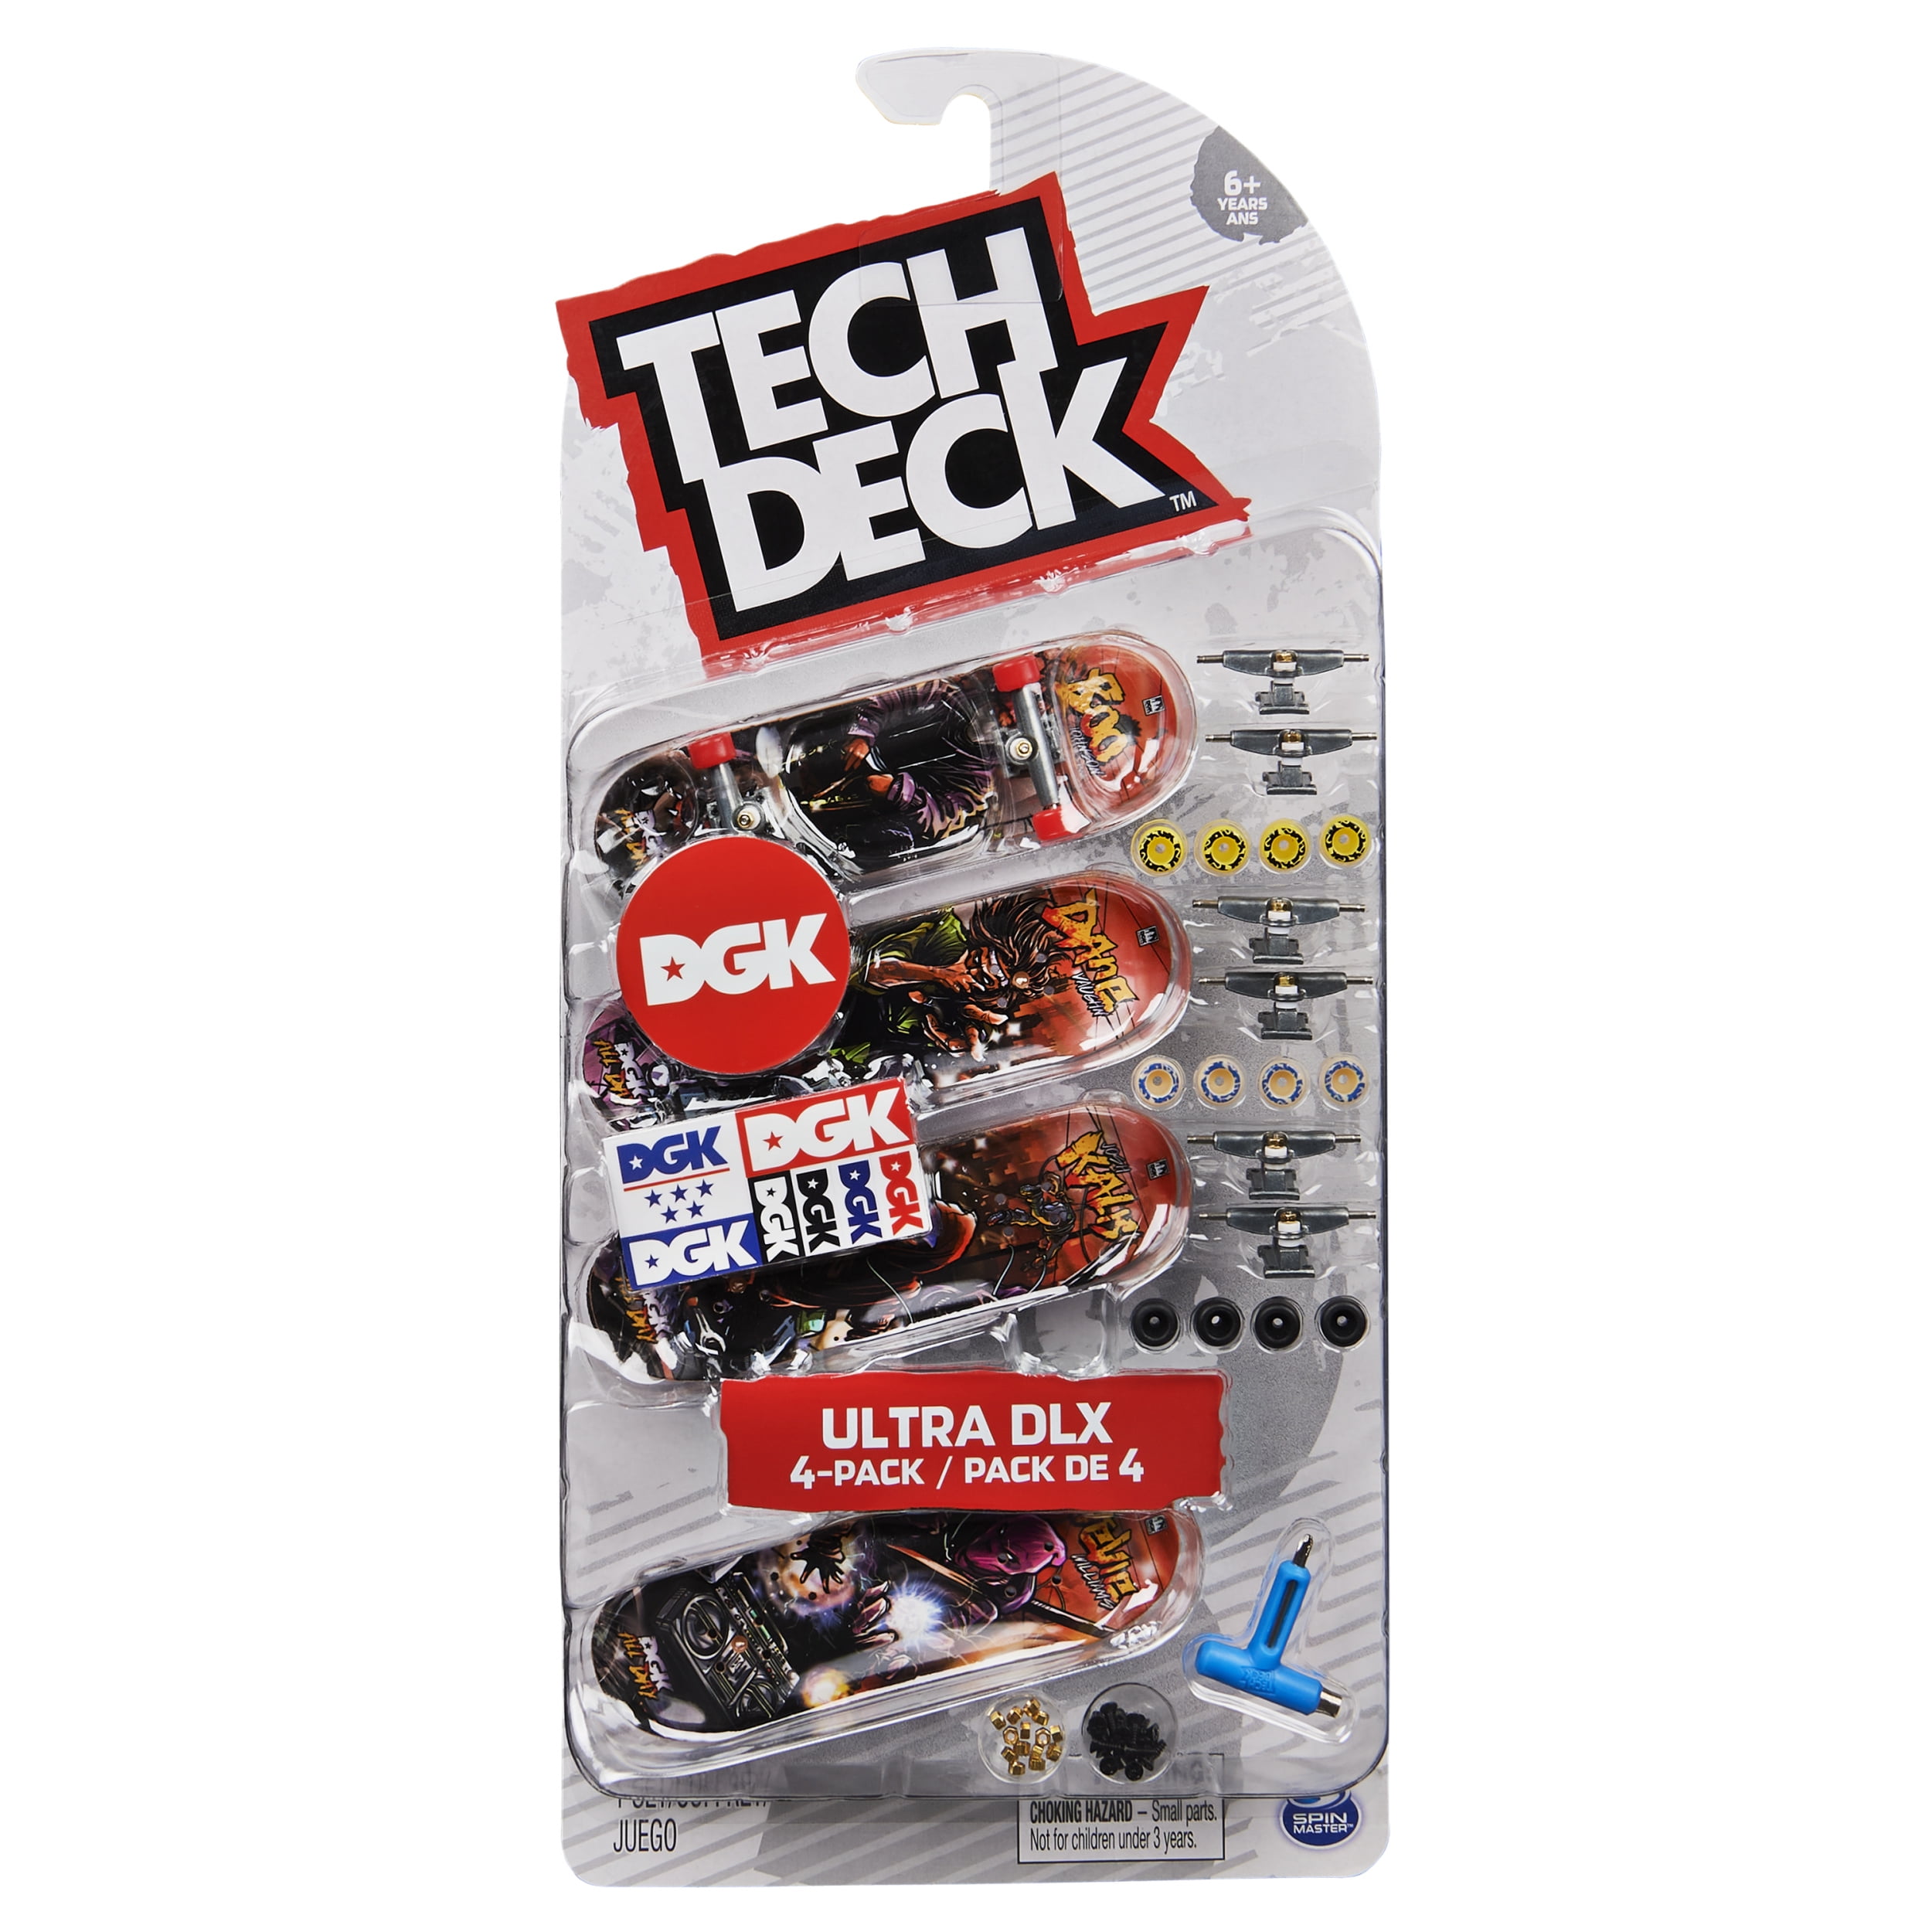 Tech Deck DGK Rosary Lenticular Finger Skateboard